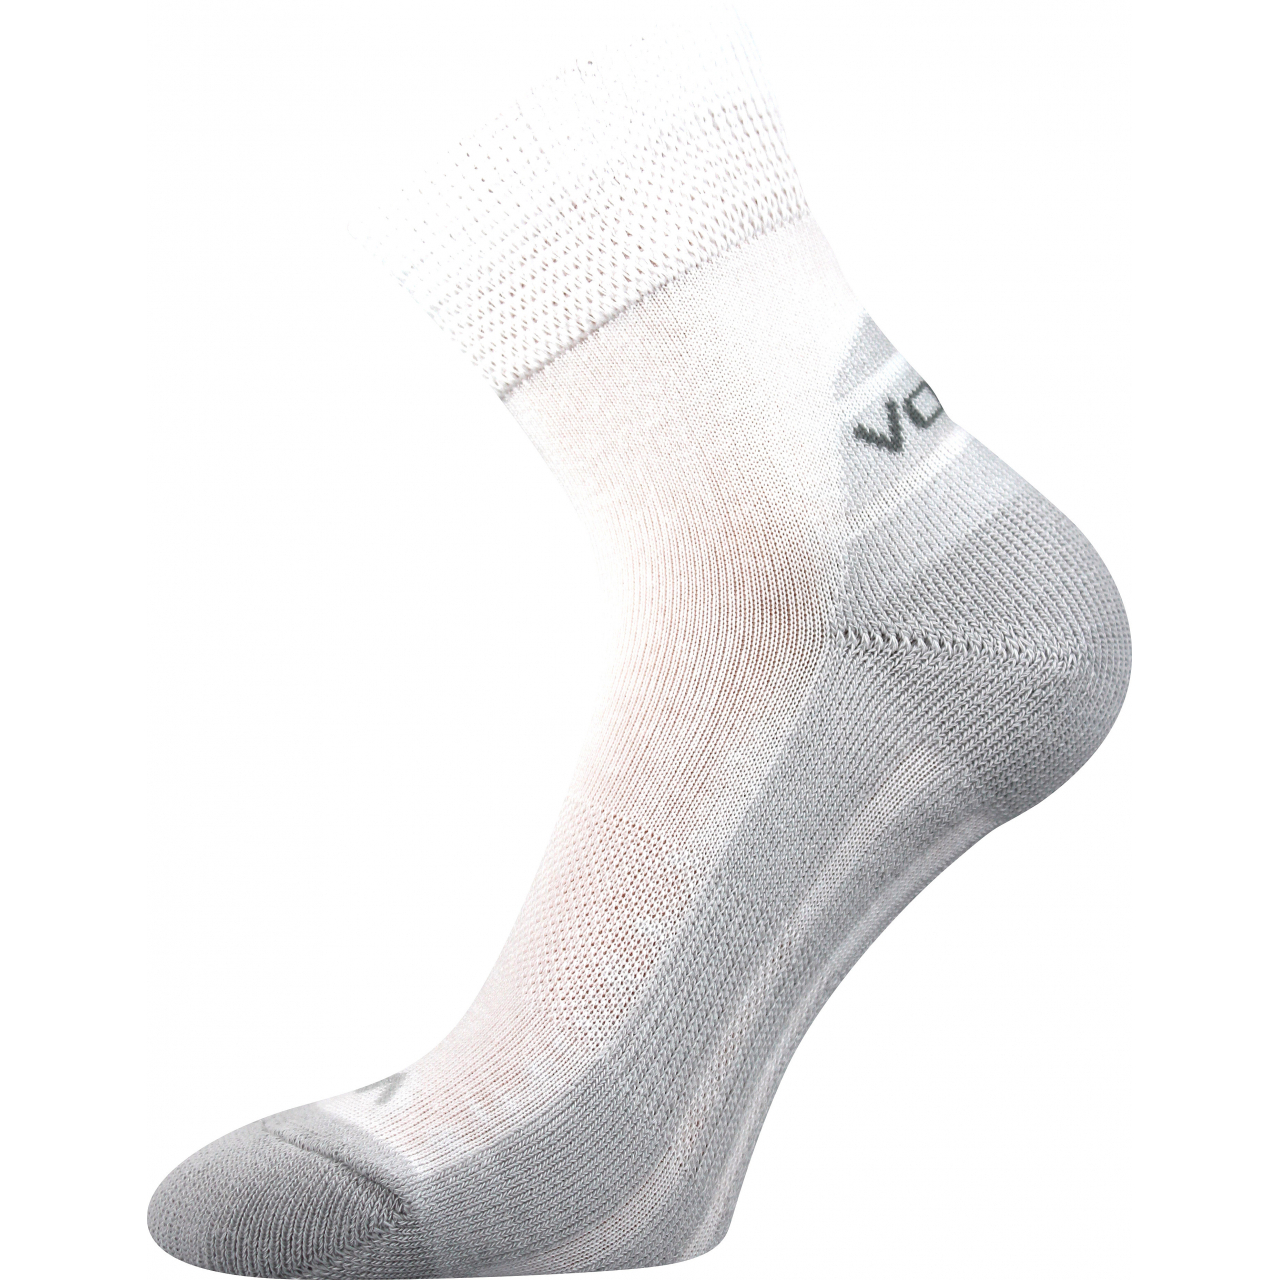 Ponožky sportovní Voxx Oliver - bílé-šedé, 47-50